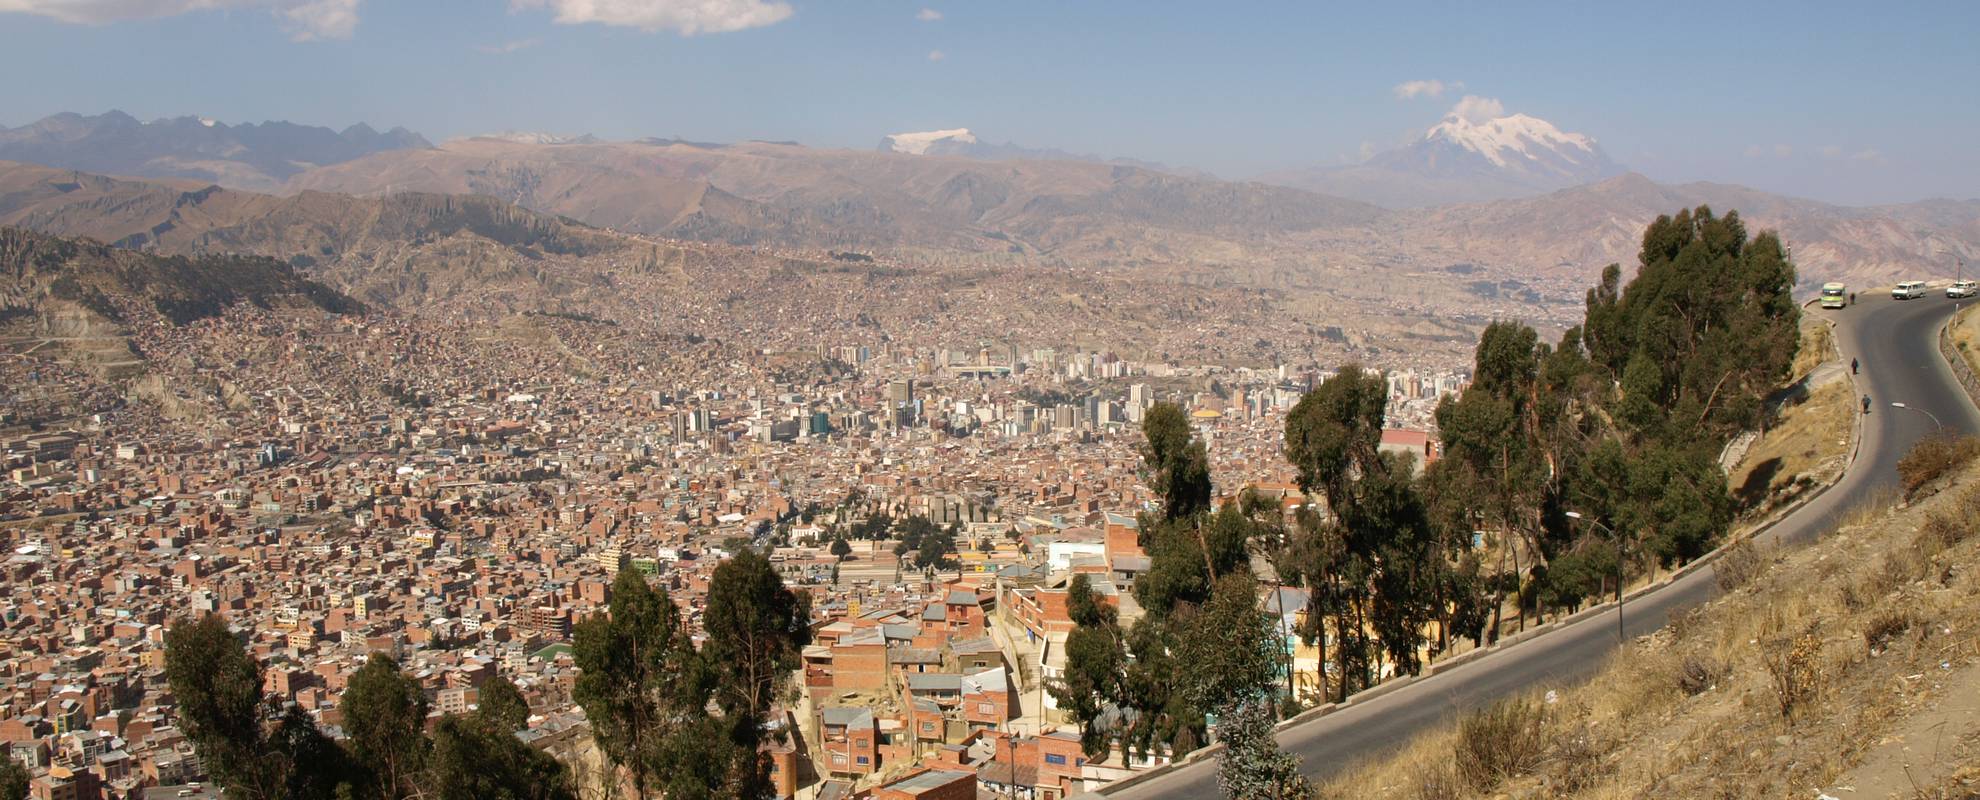 La Paz från vägen mellan flygplatsen och centrum. I bakgrunden berget Illimani.